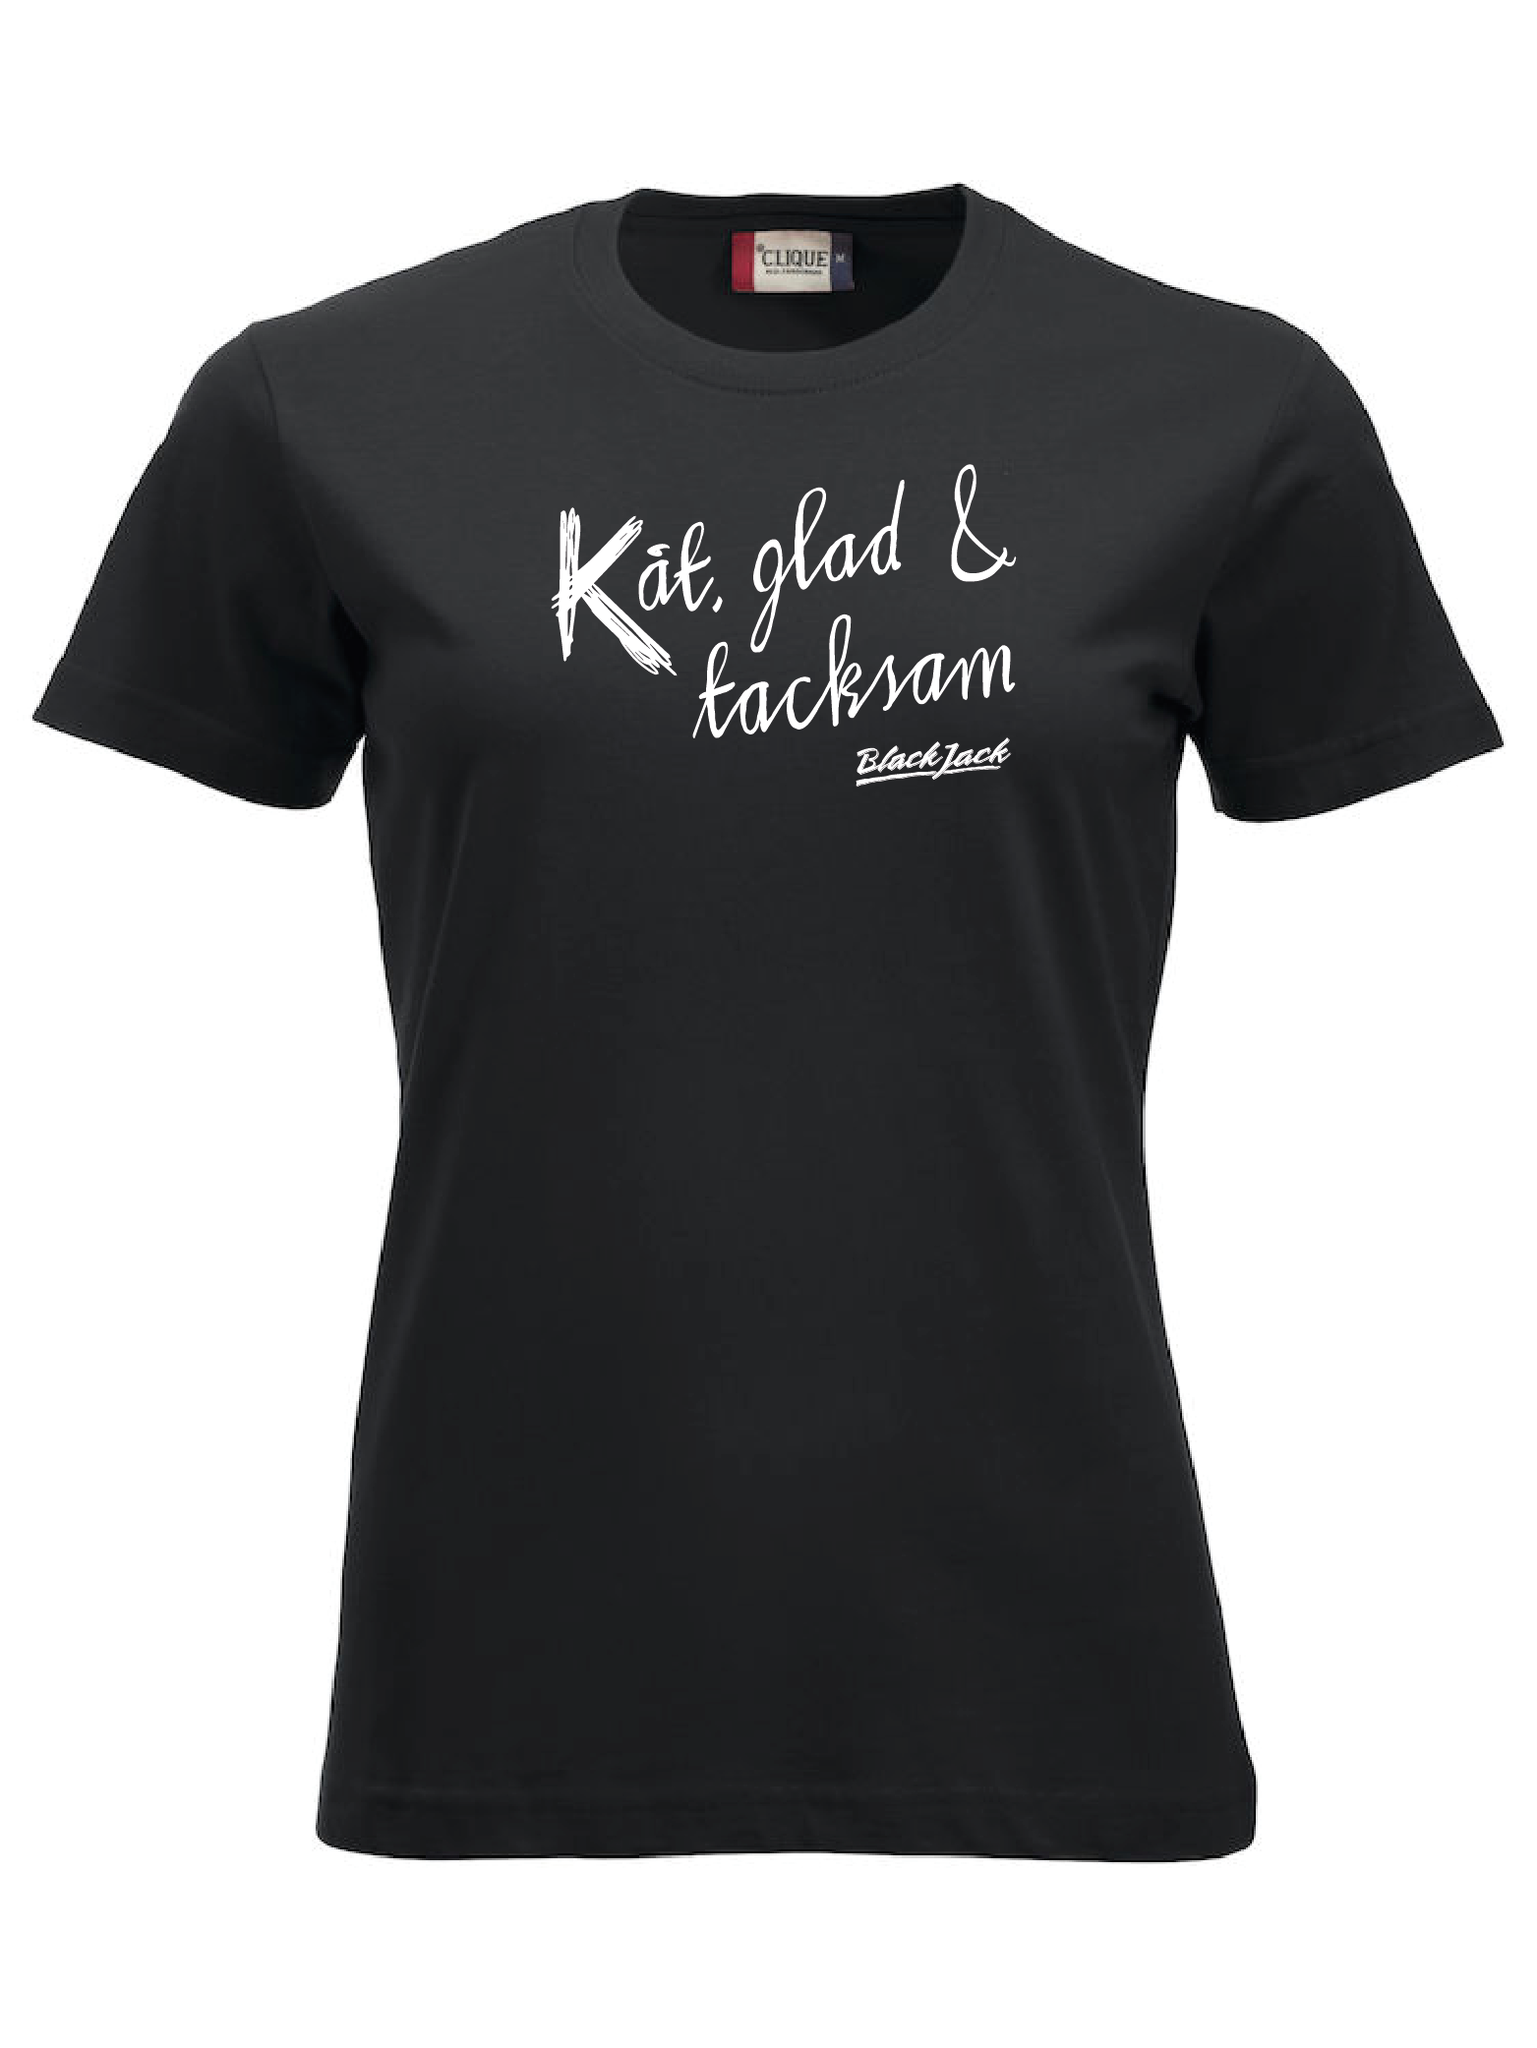 Svart Dam T-shirt "Black Jack Kåt, glad & tacksam"